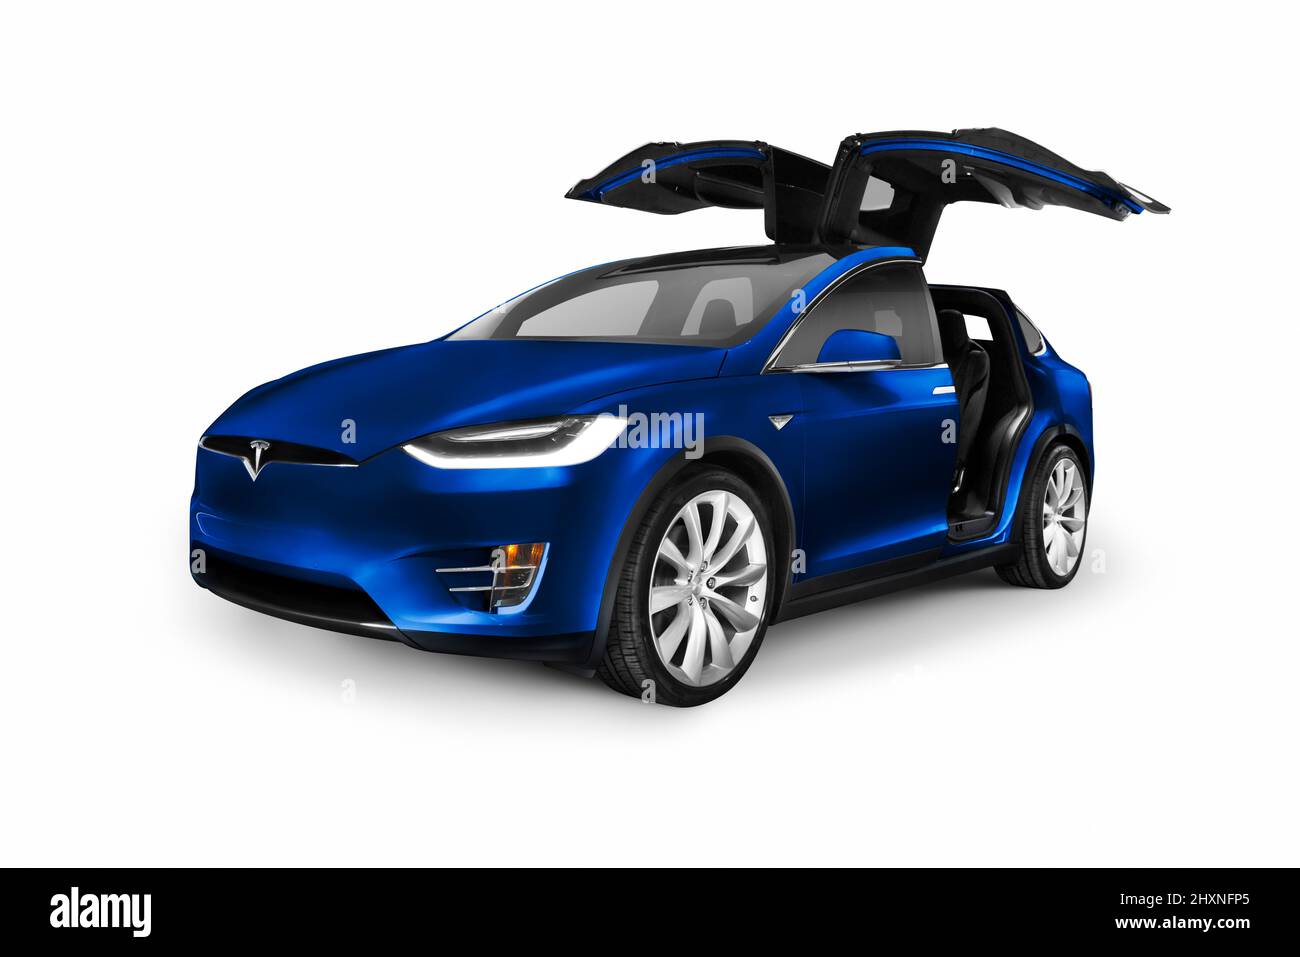 Licencia e impresiones en MaximImages.com - coche eléctrico de lujo de Tesla, foto de archivo de automoción. Foto de stock